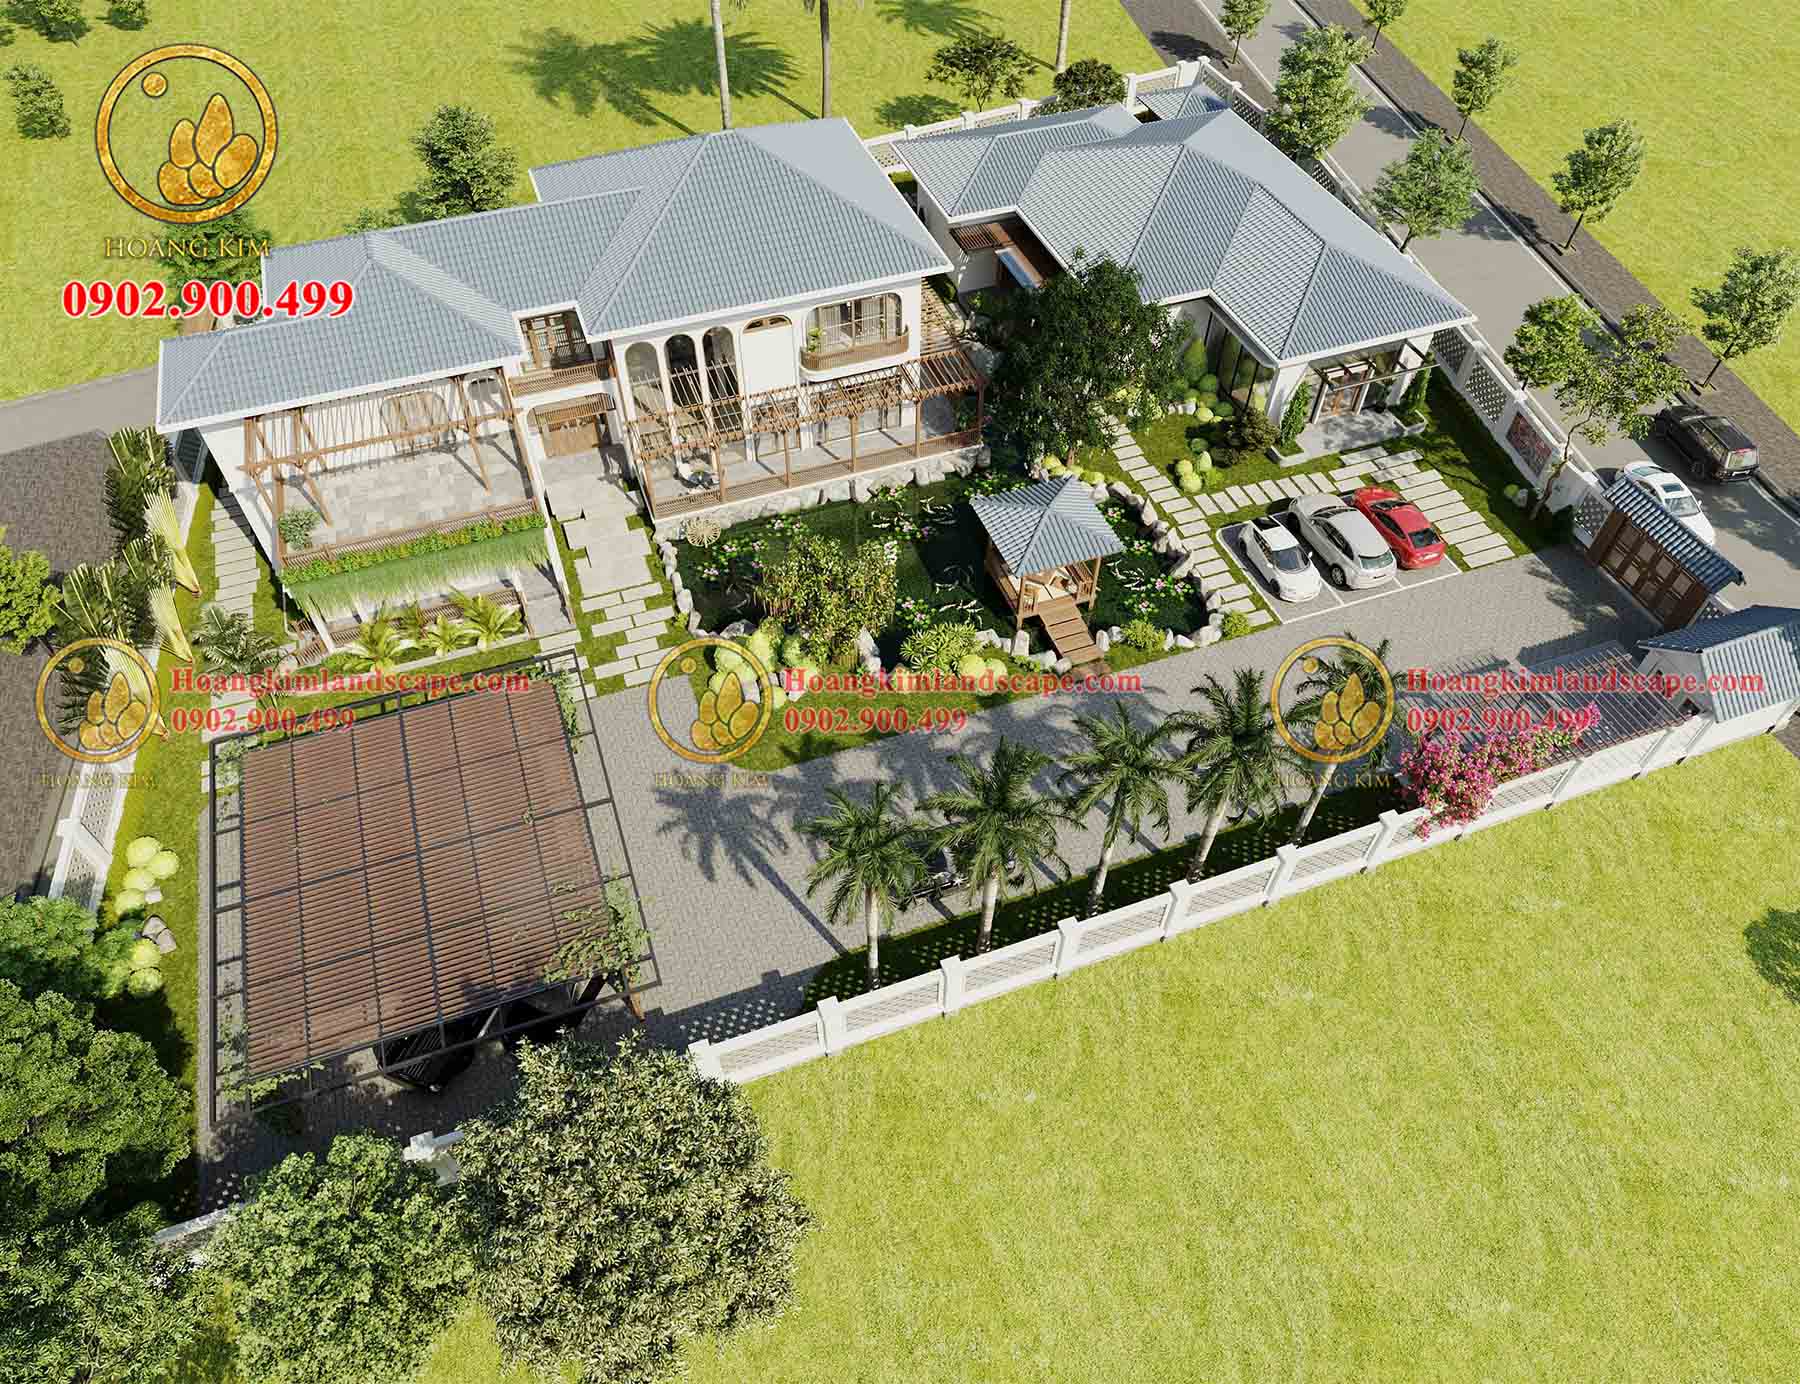 Biệt thự vườn cấp 4 có gác lửng 3 phòng ngủ 8,5x20 ở Nam Định M144